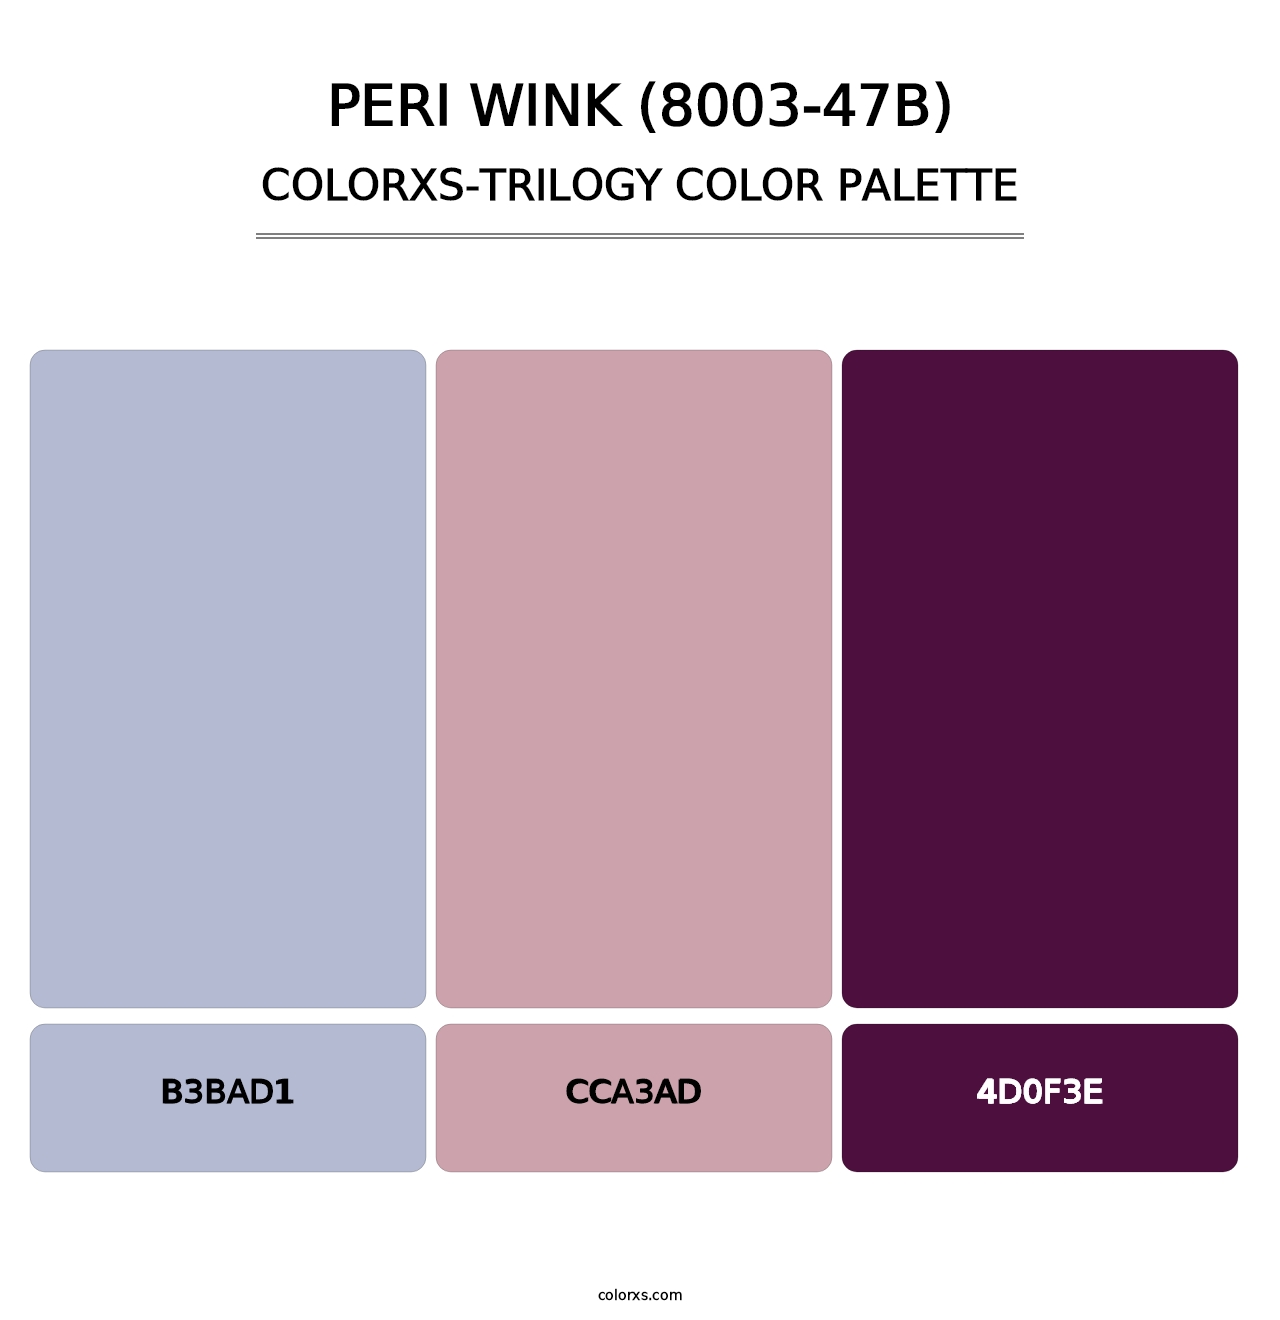 Peri Wink (8003-47B) - Colorxs Trilogy Palette